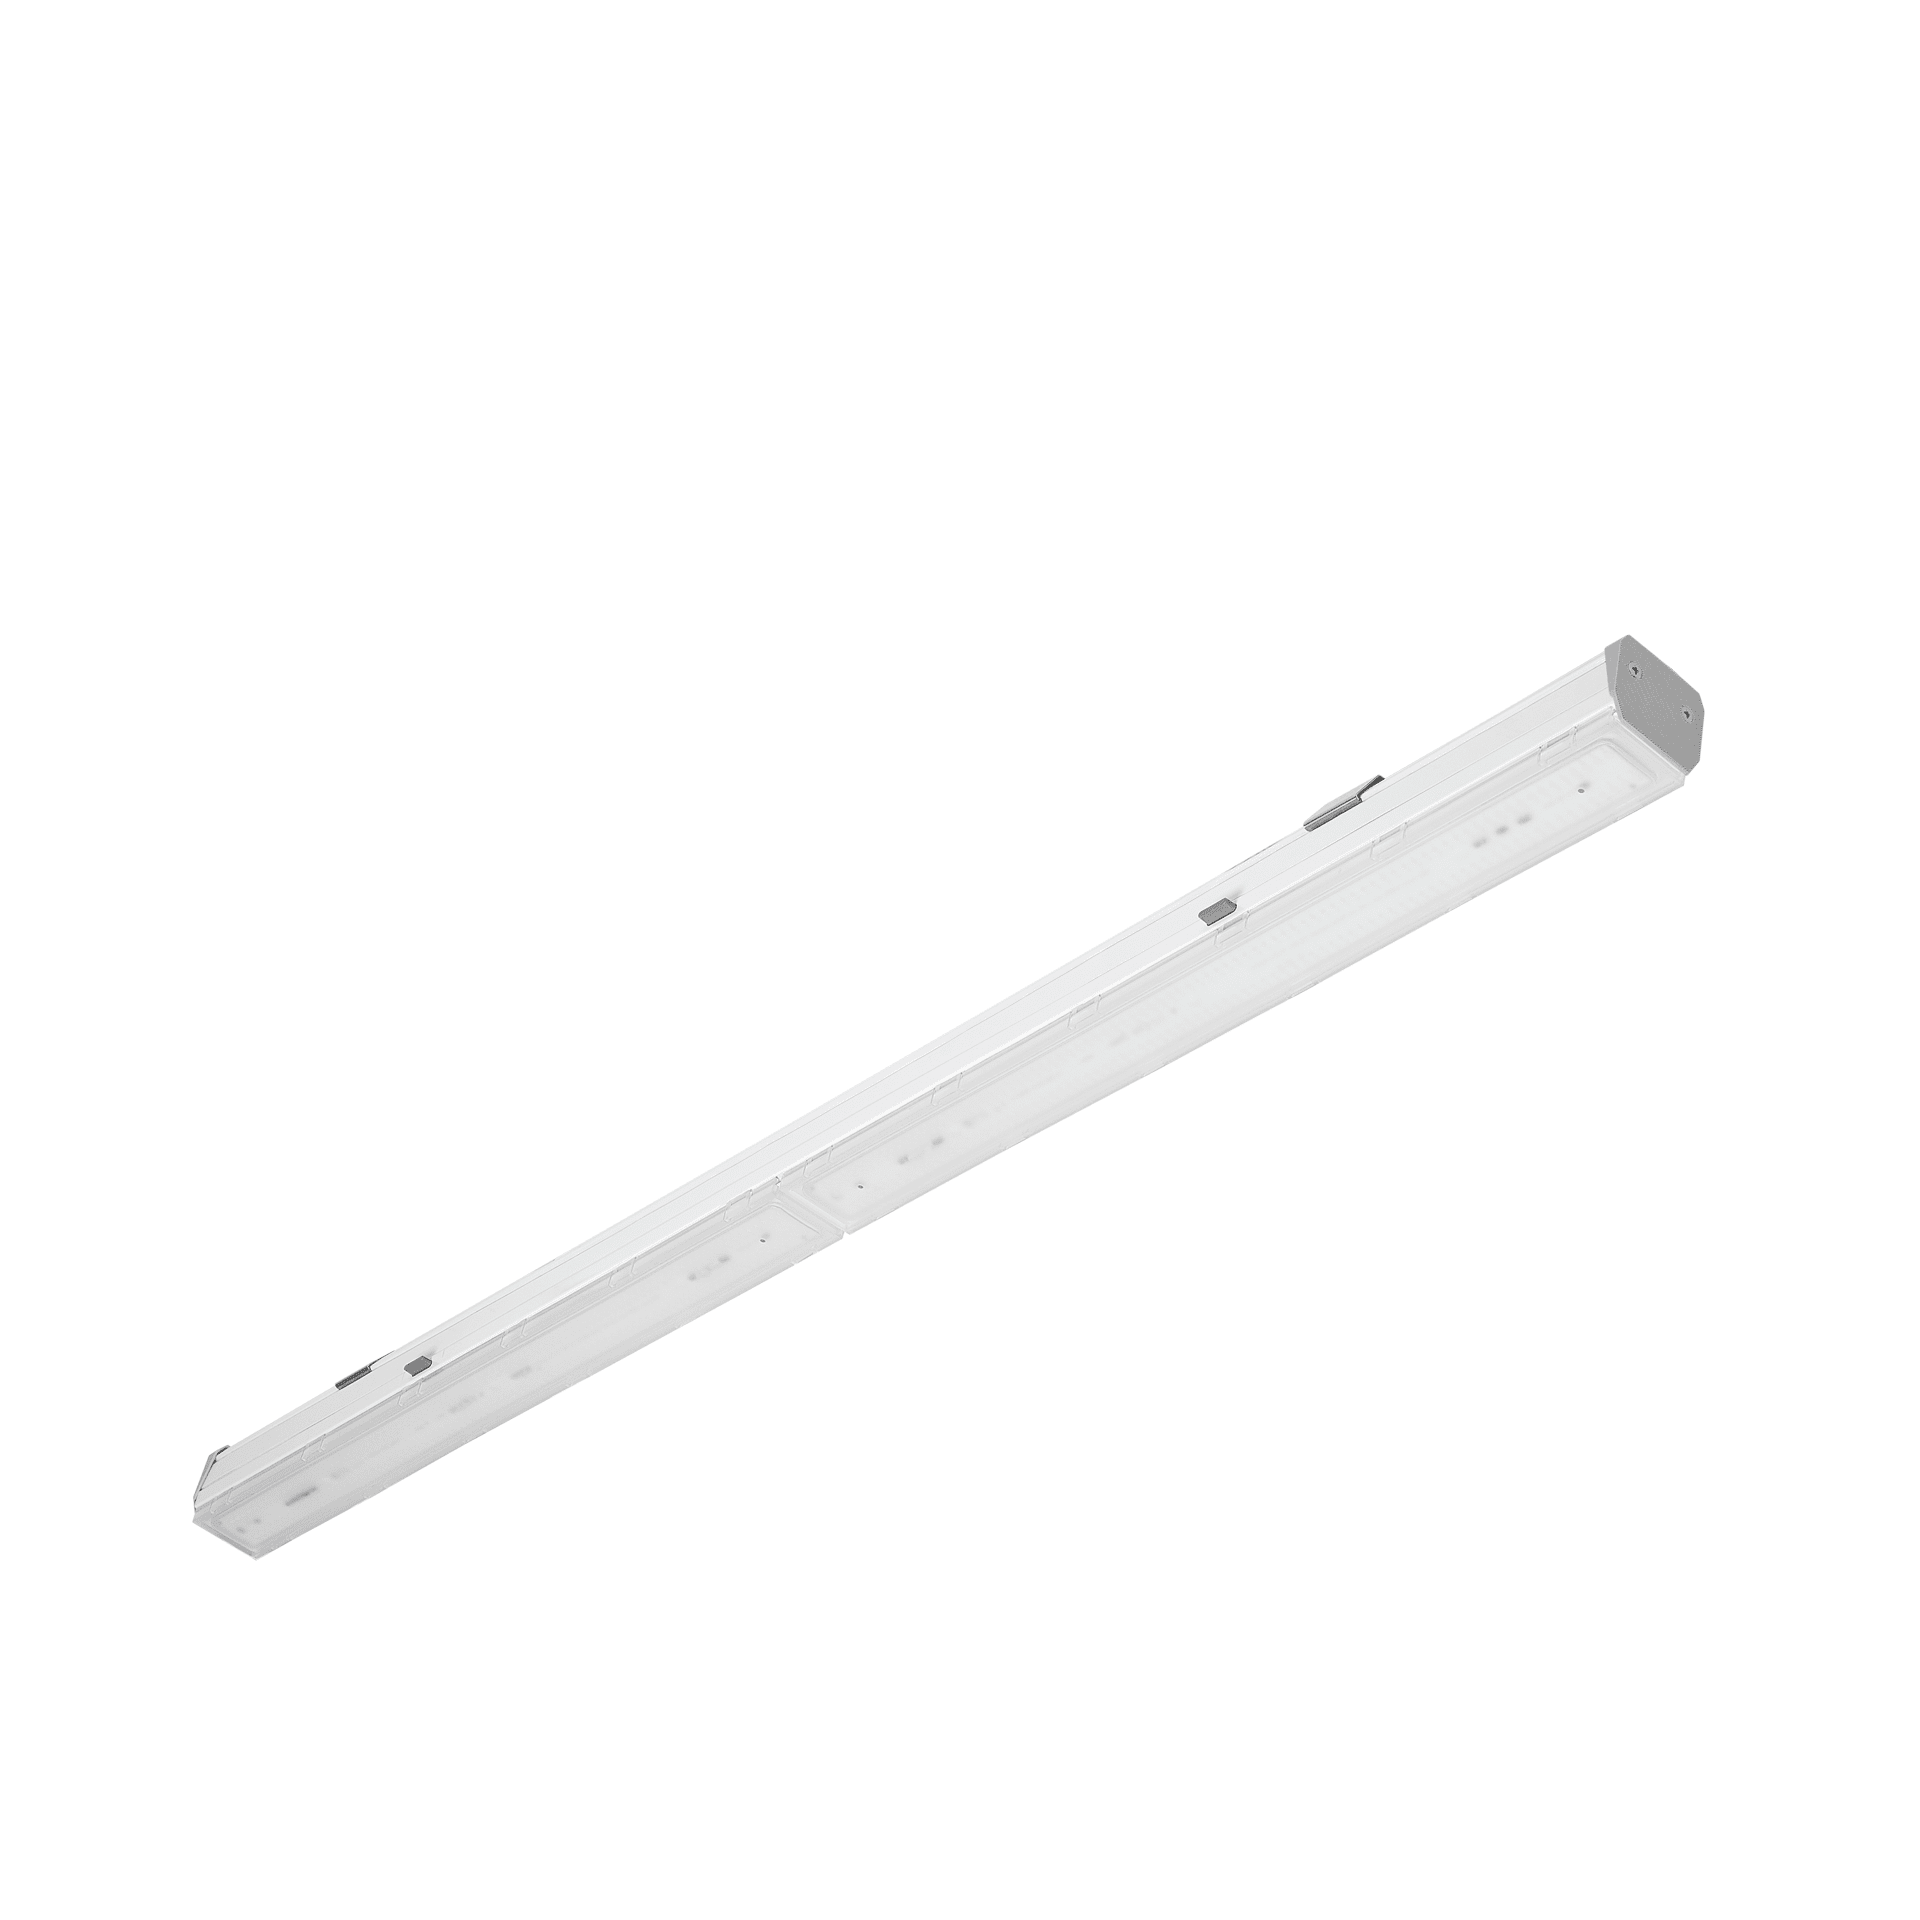 Linea S LED moduł świetlny